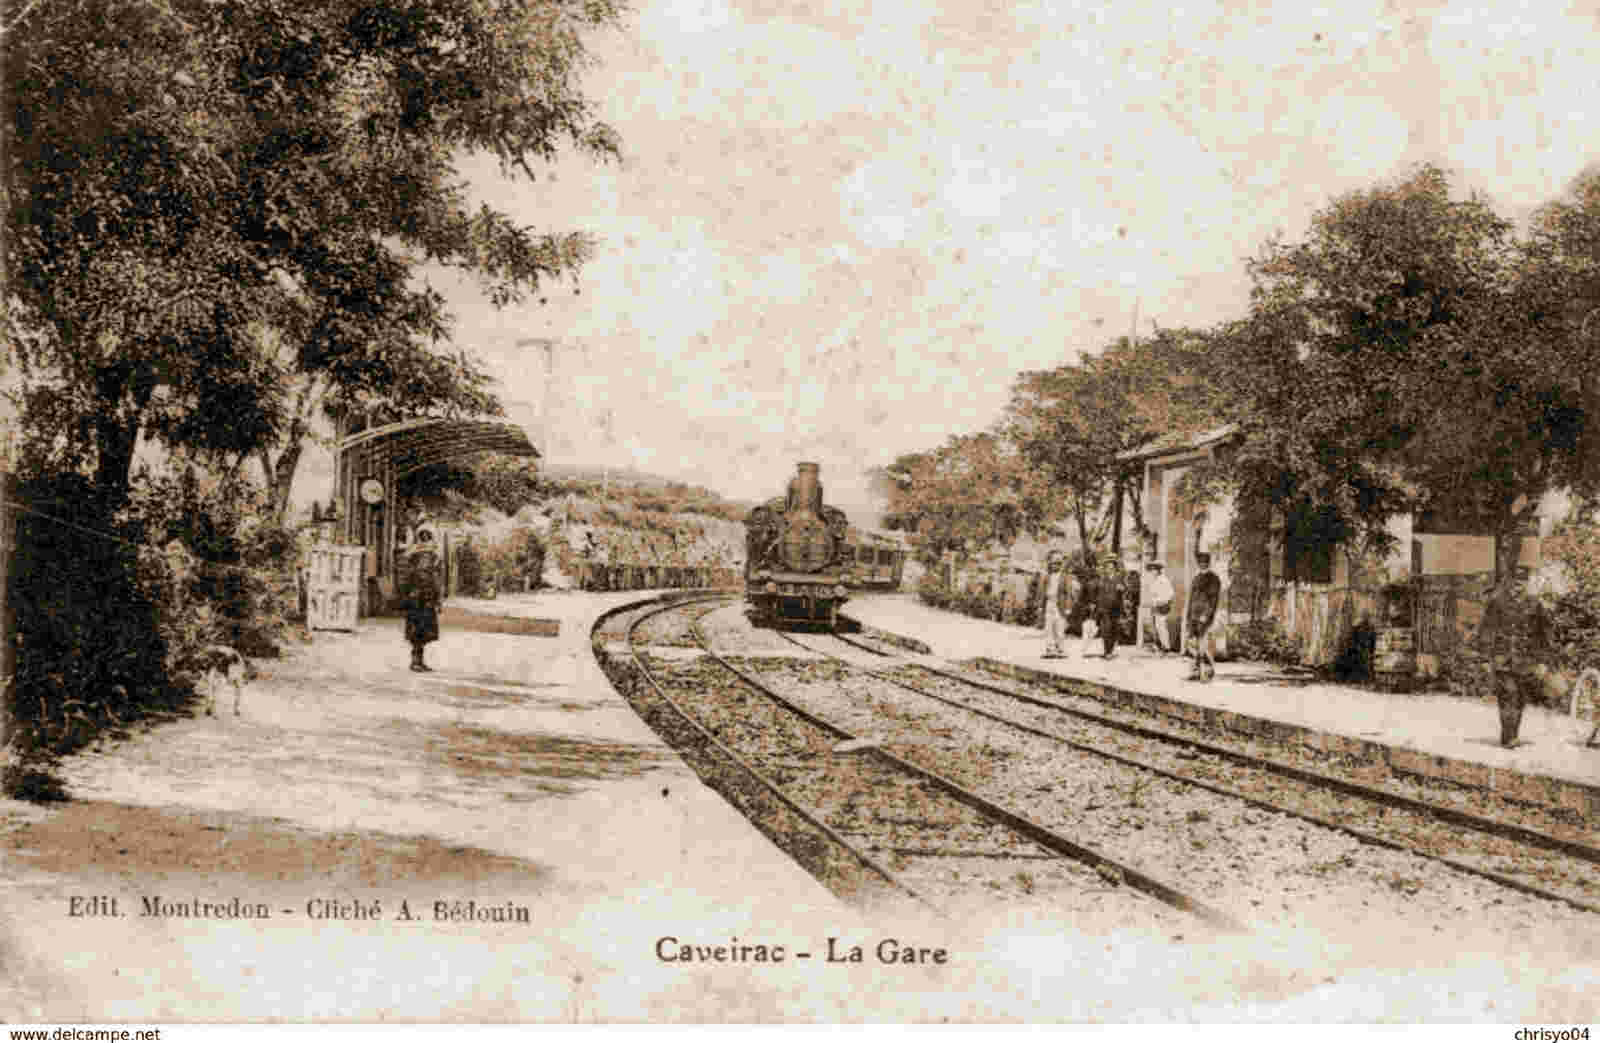 Gare de Caveurac